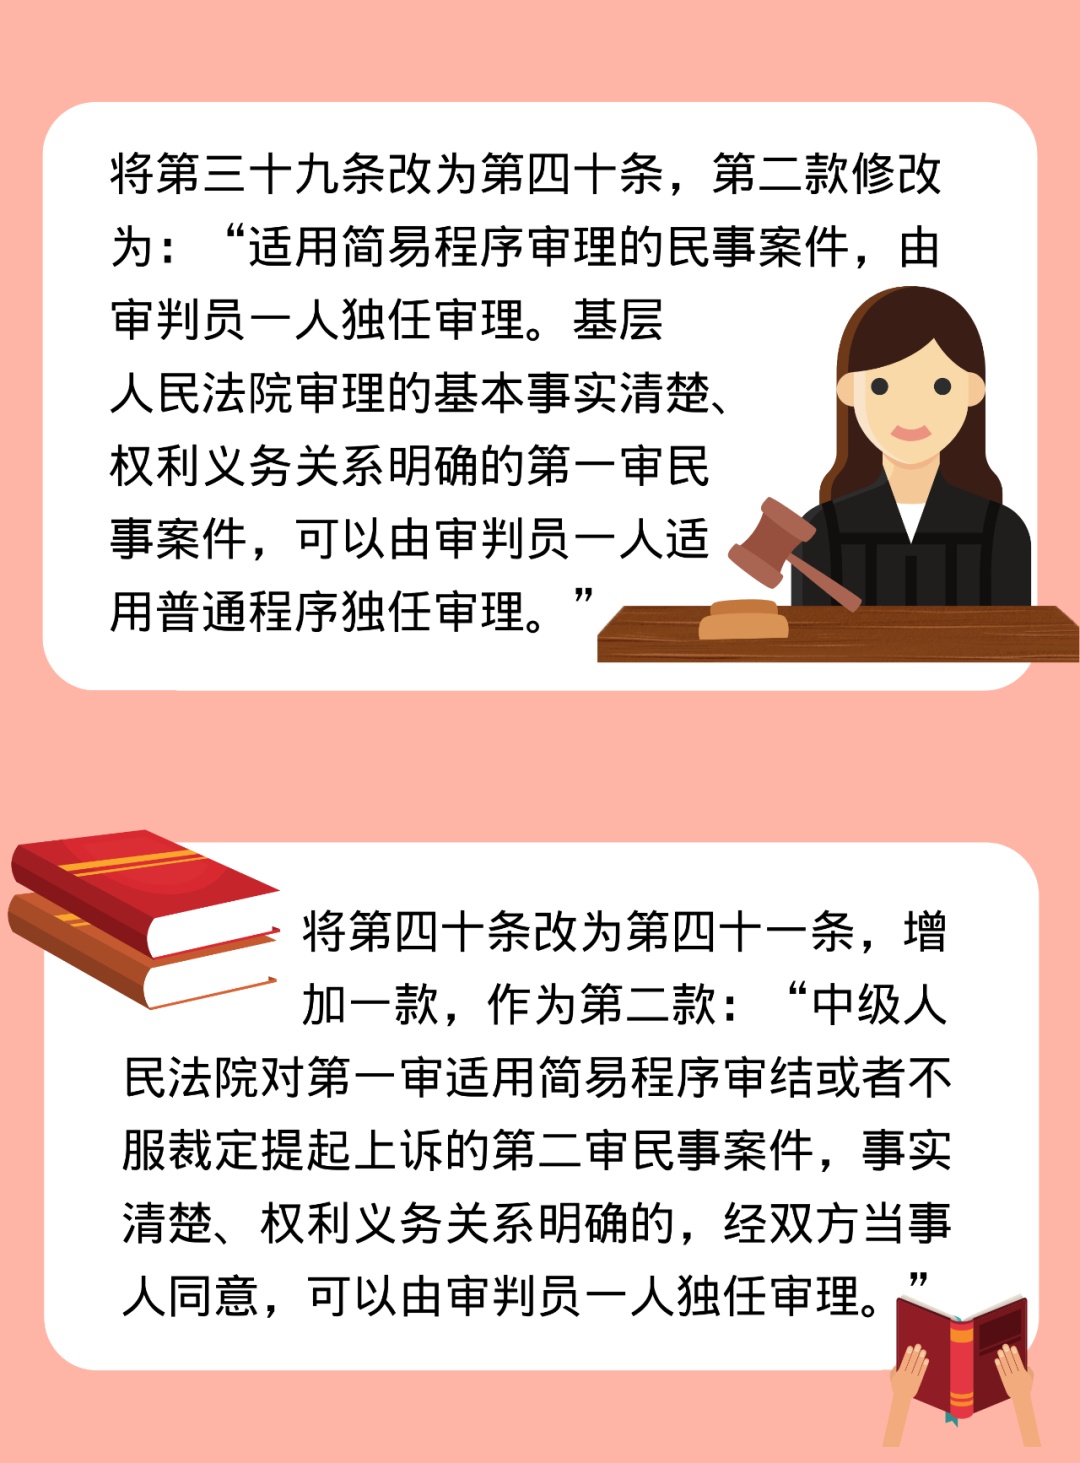 作了这些修改于2022年1月1日起施行《中华人民共和国民事诉讼法》